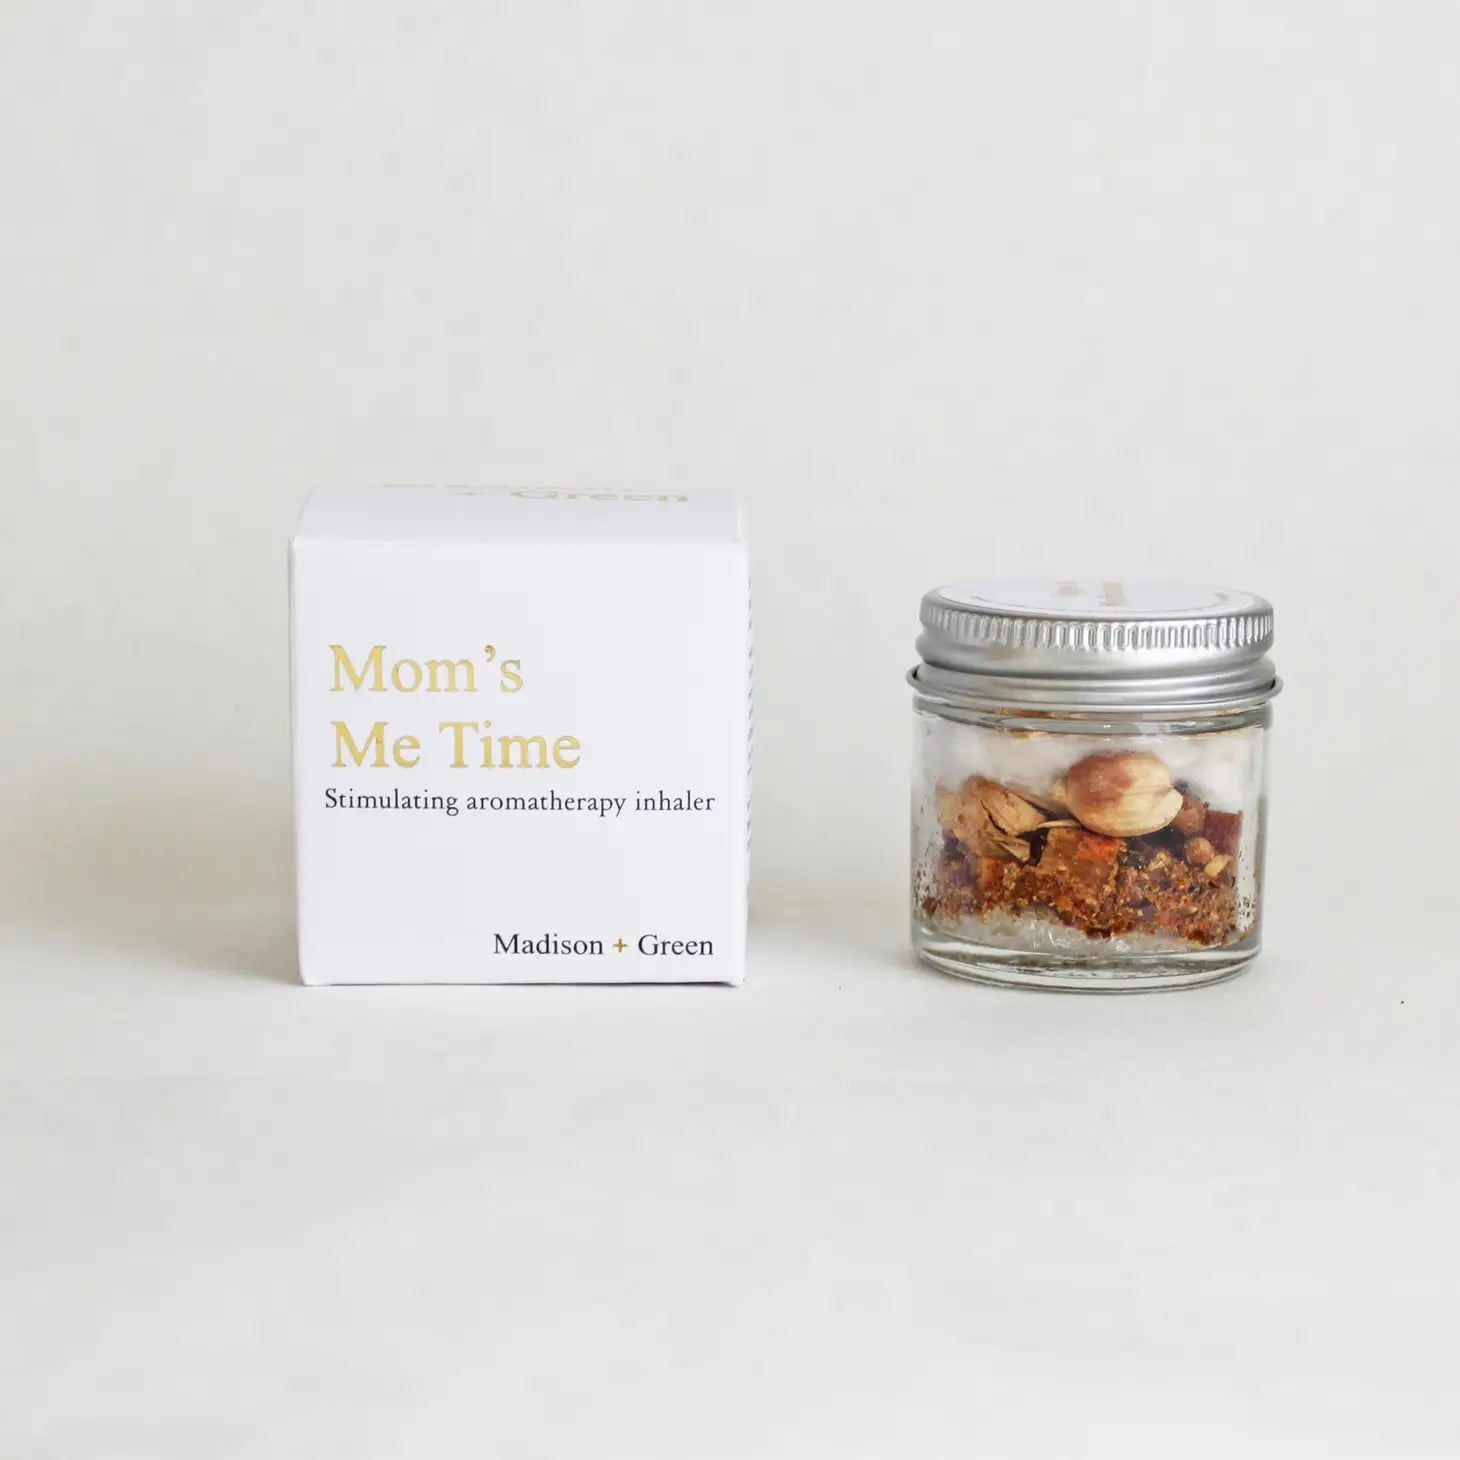 "Mom's Me Time" Aromatherapy Inhaler